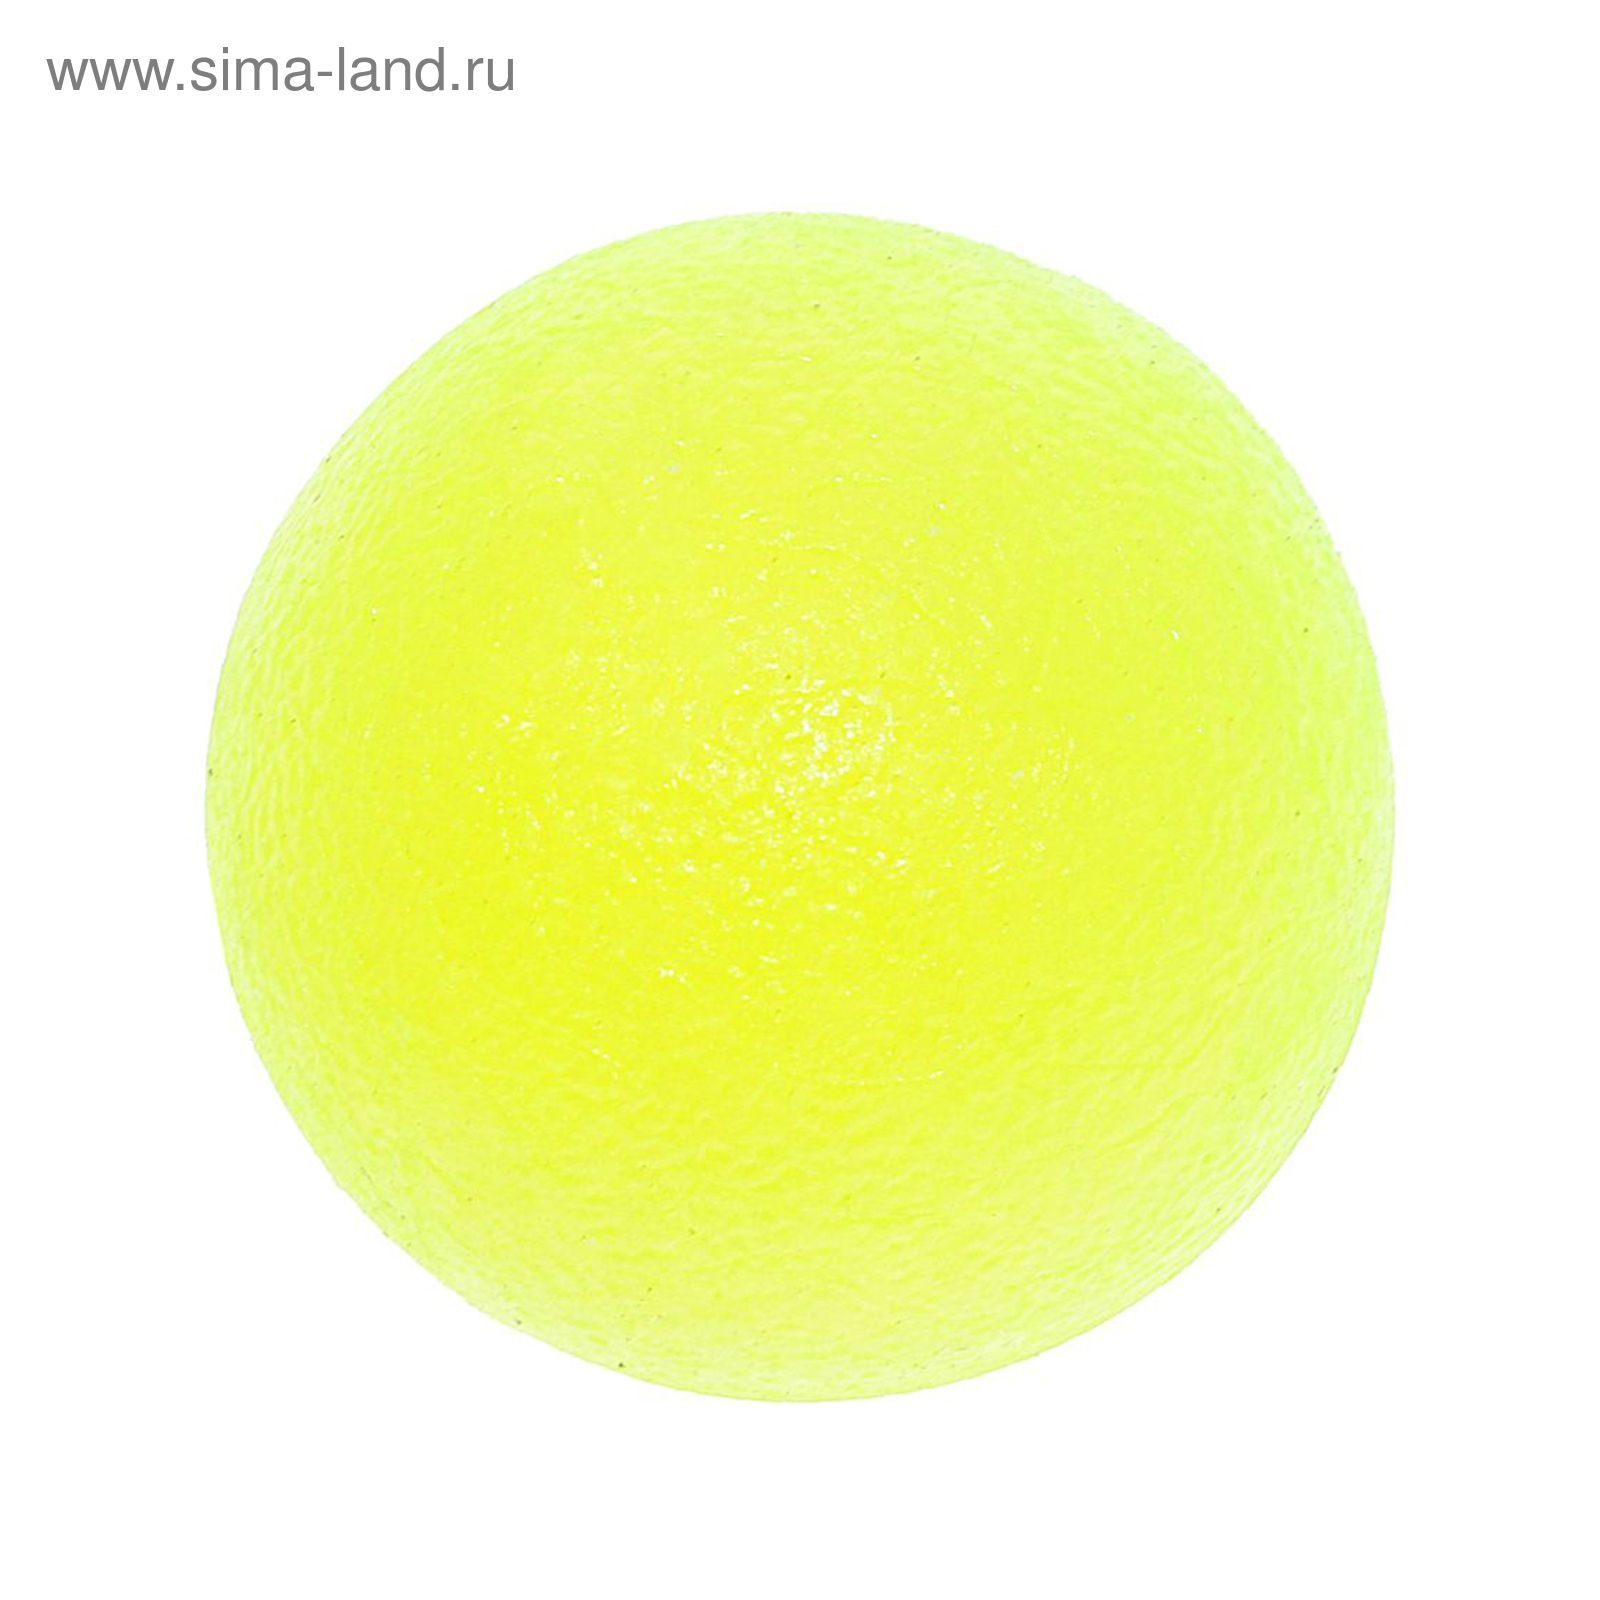 Эспандер ПВХ мячик круглый d=5 см, цвета МИКС